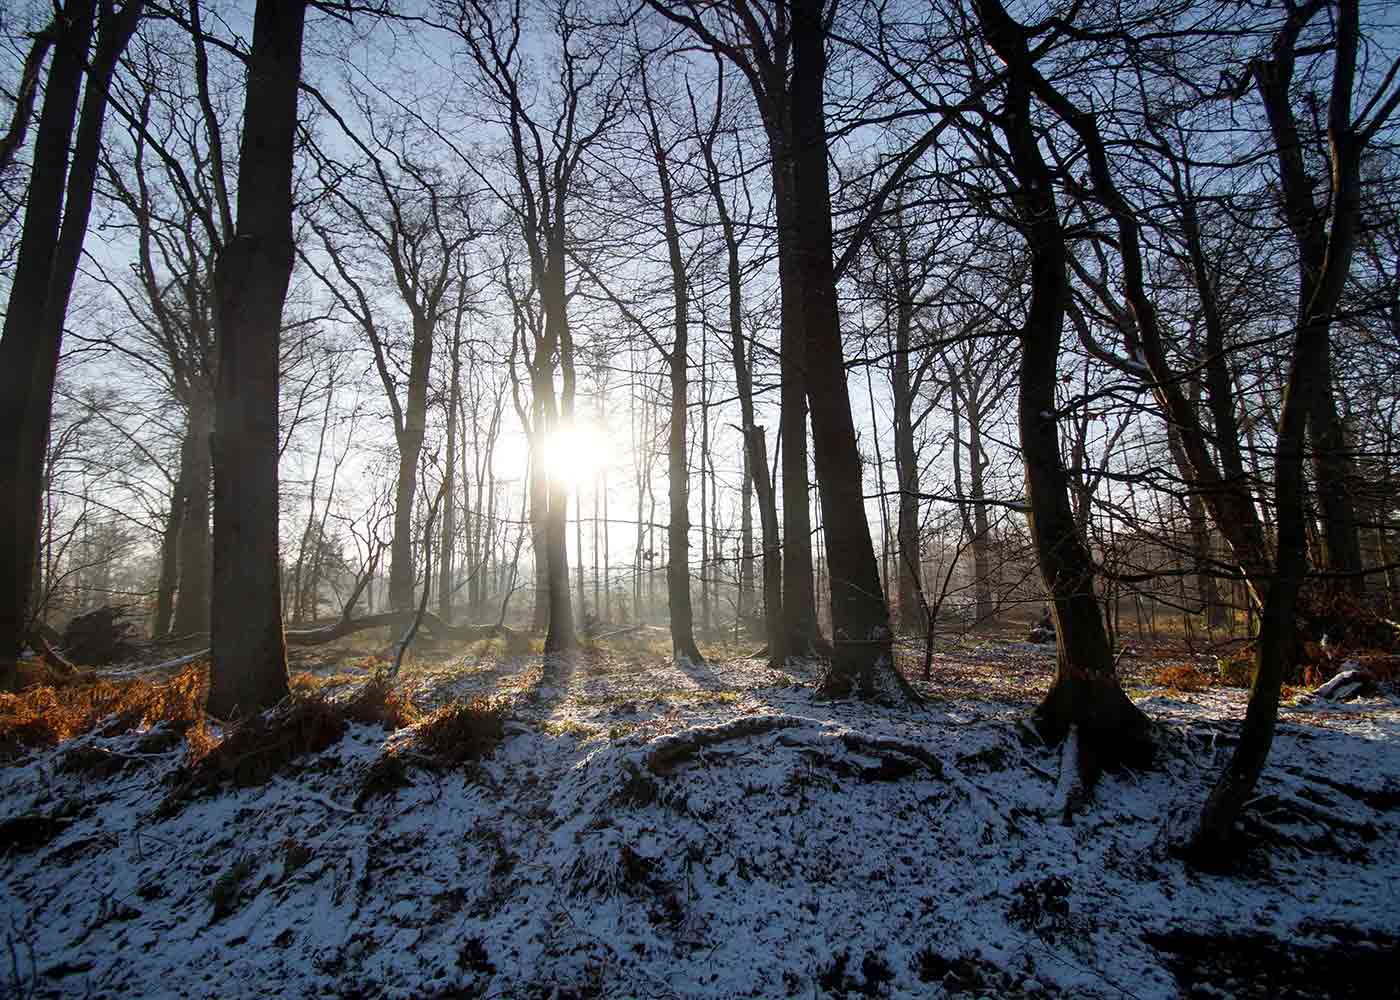 Laub-Mischwald in der laubfreien Zeit, die Sonne scheint zwischen den Bäumen hindurch und es liegt Schnee.